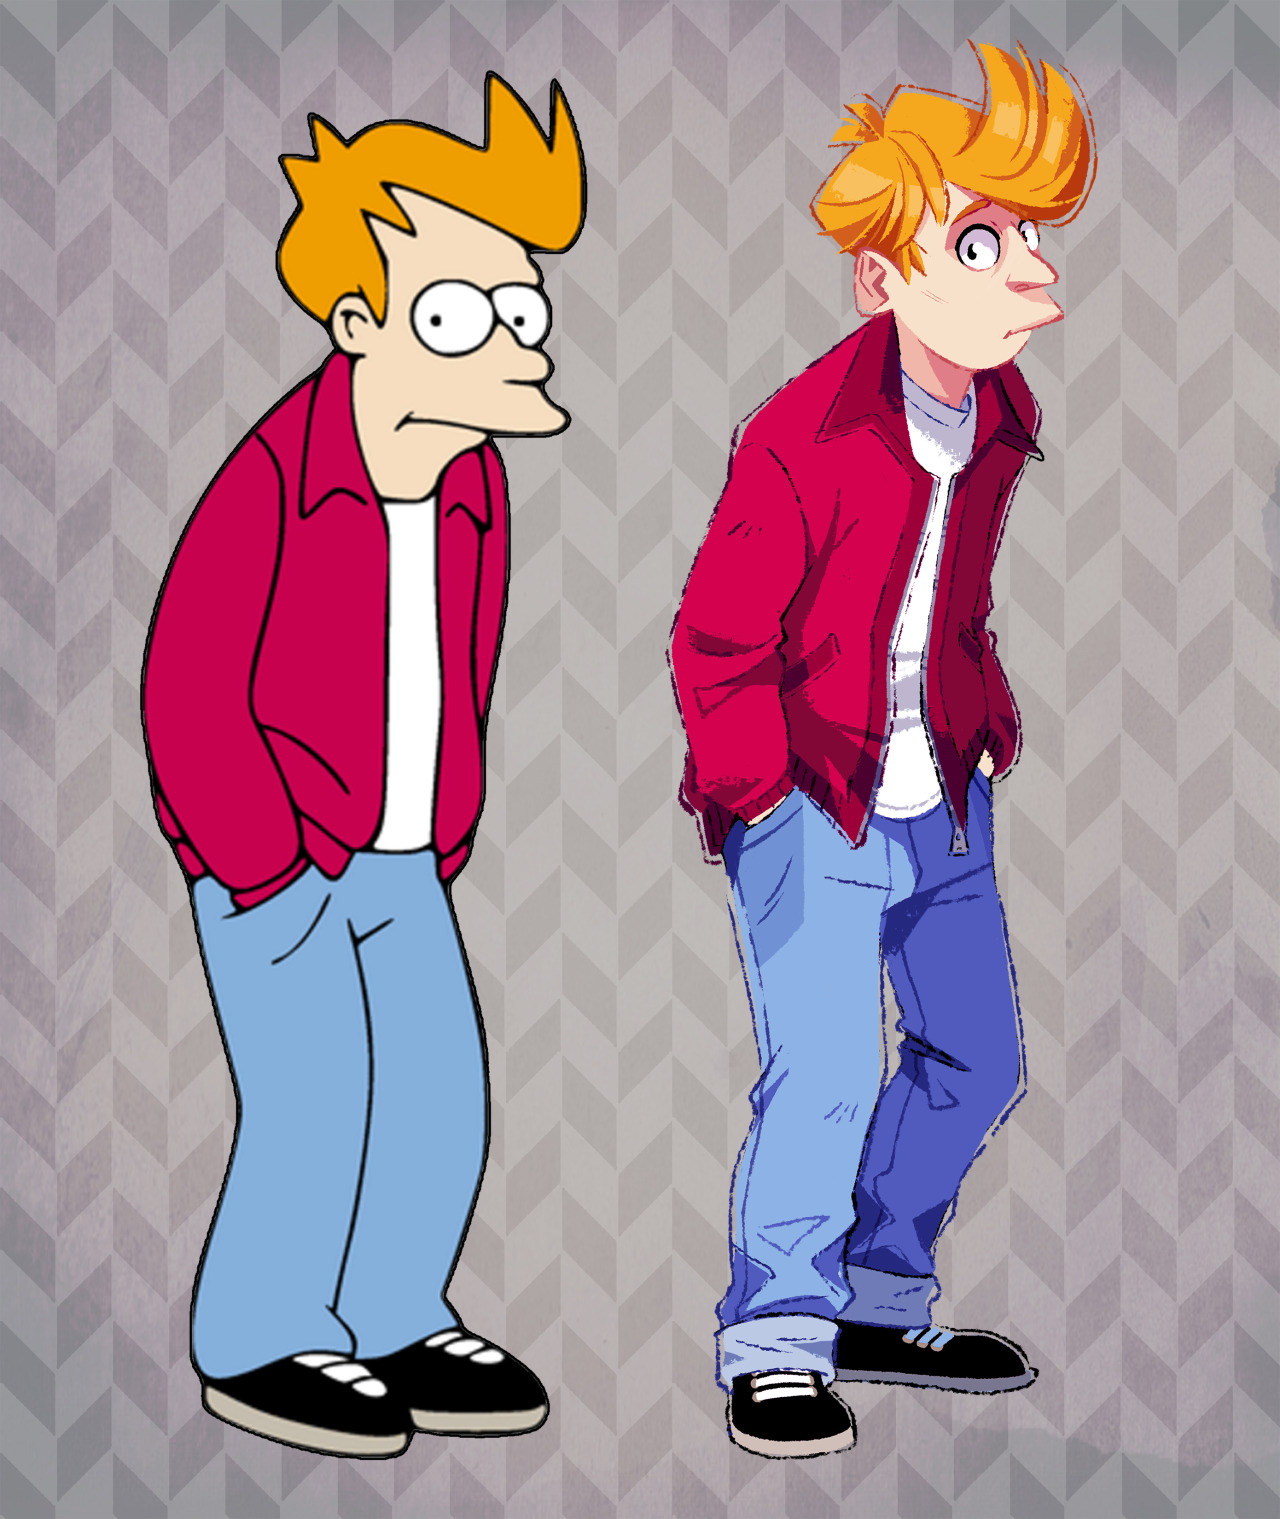 Fry de Futurama (que parece o James Dean!)